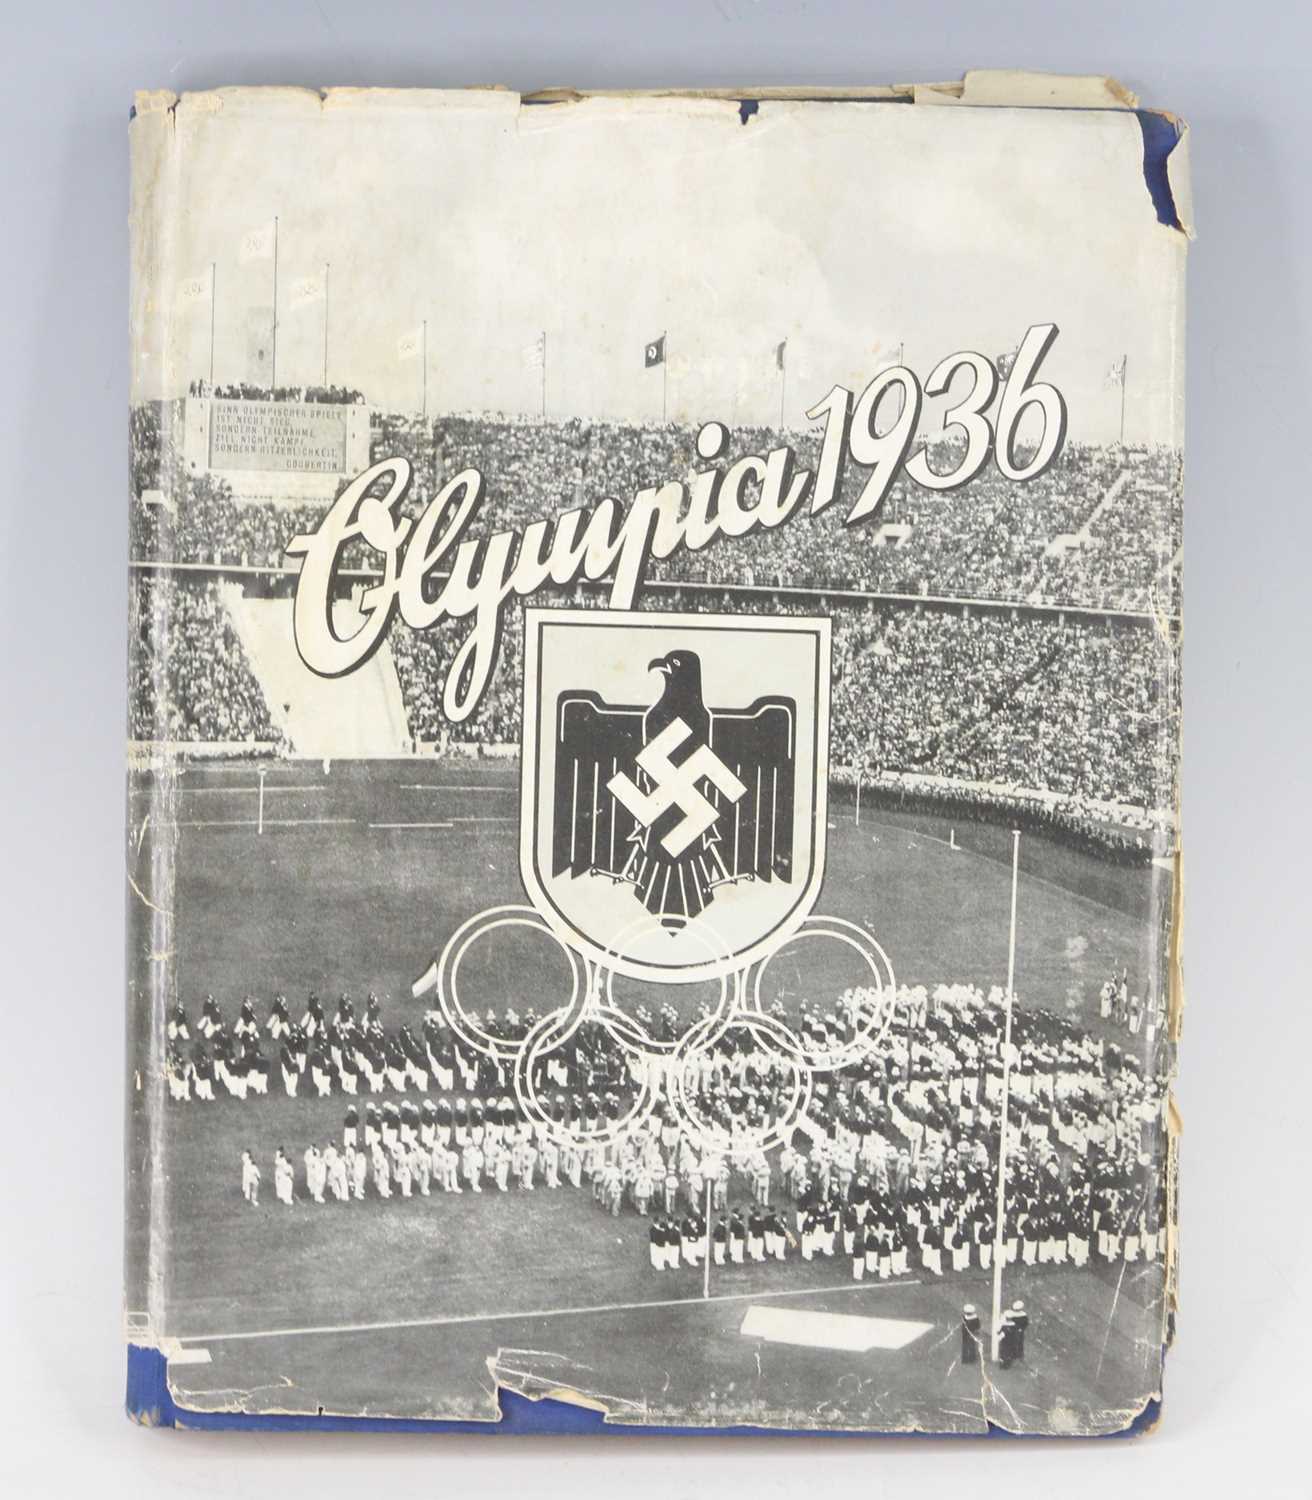 The German Third Reich 1936 Olympics photo-card book "Die Olympischen Spiele 1936", Cigaretten-